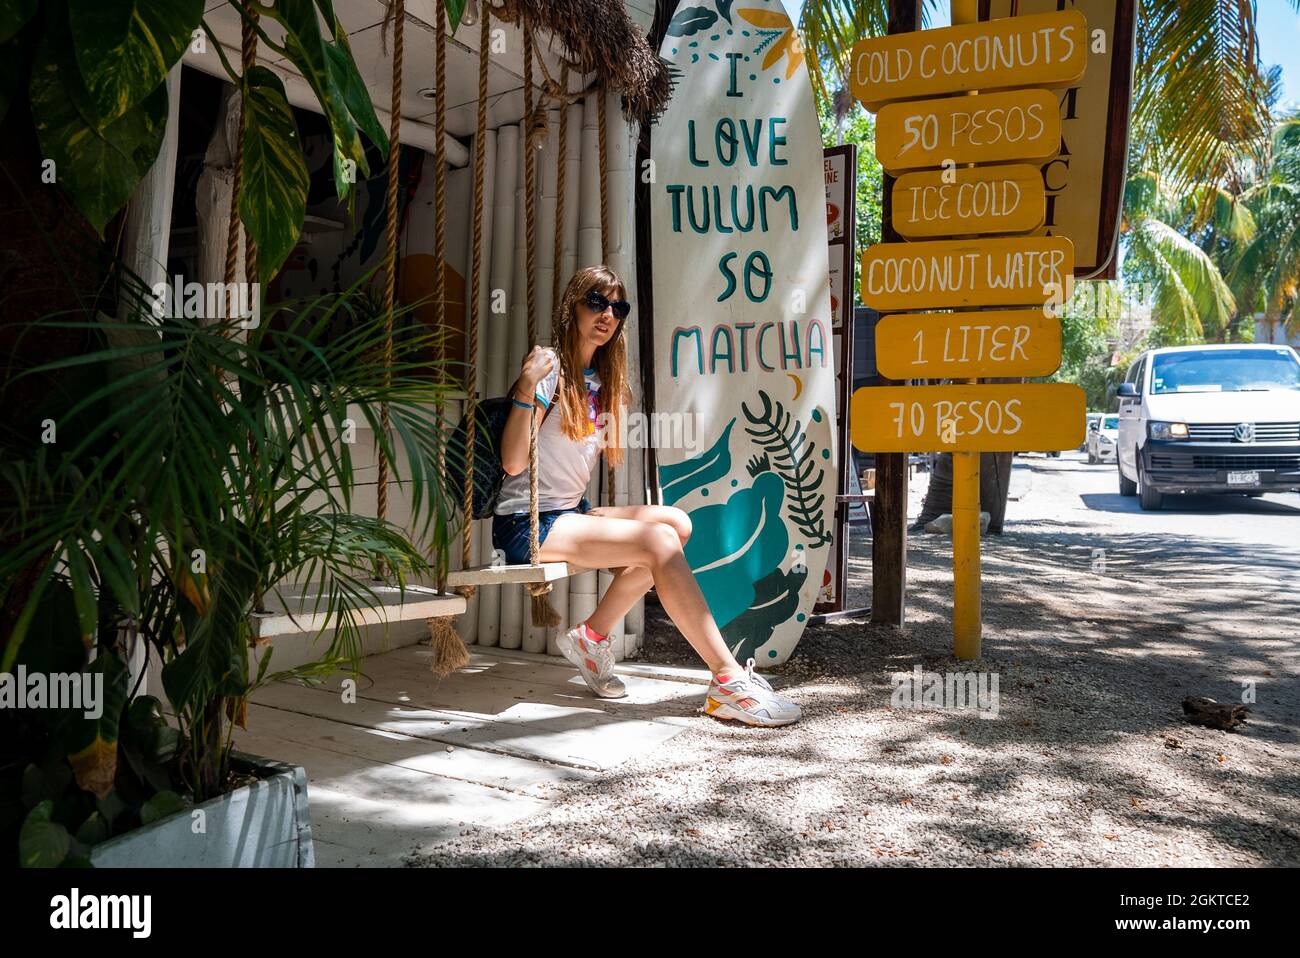 Mujer sentada en el asiento oscilante de la tienda de coco con menú de bebidas al lado de la carretera Foto de stock